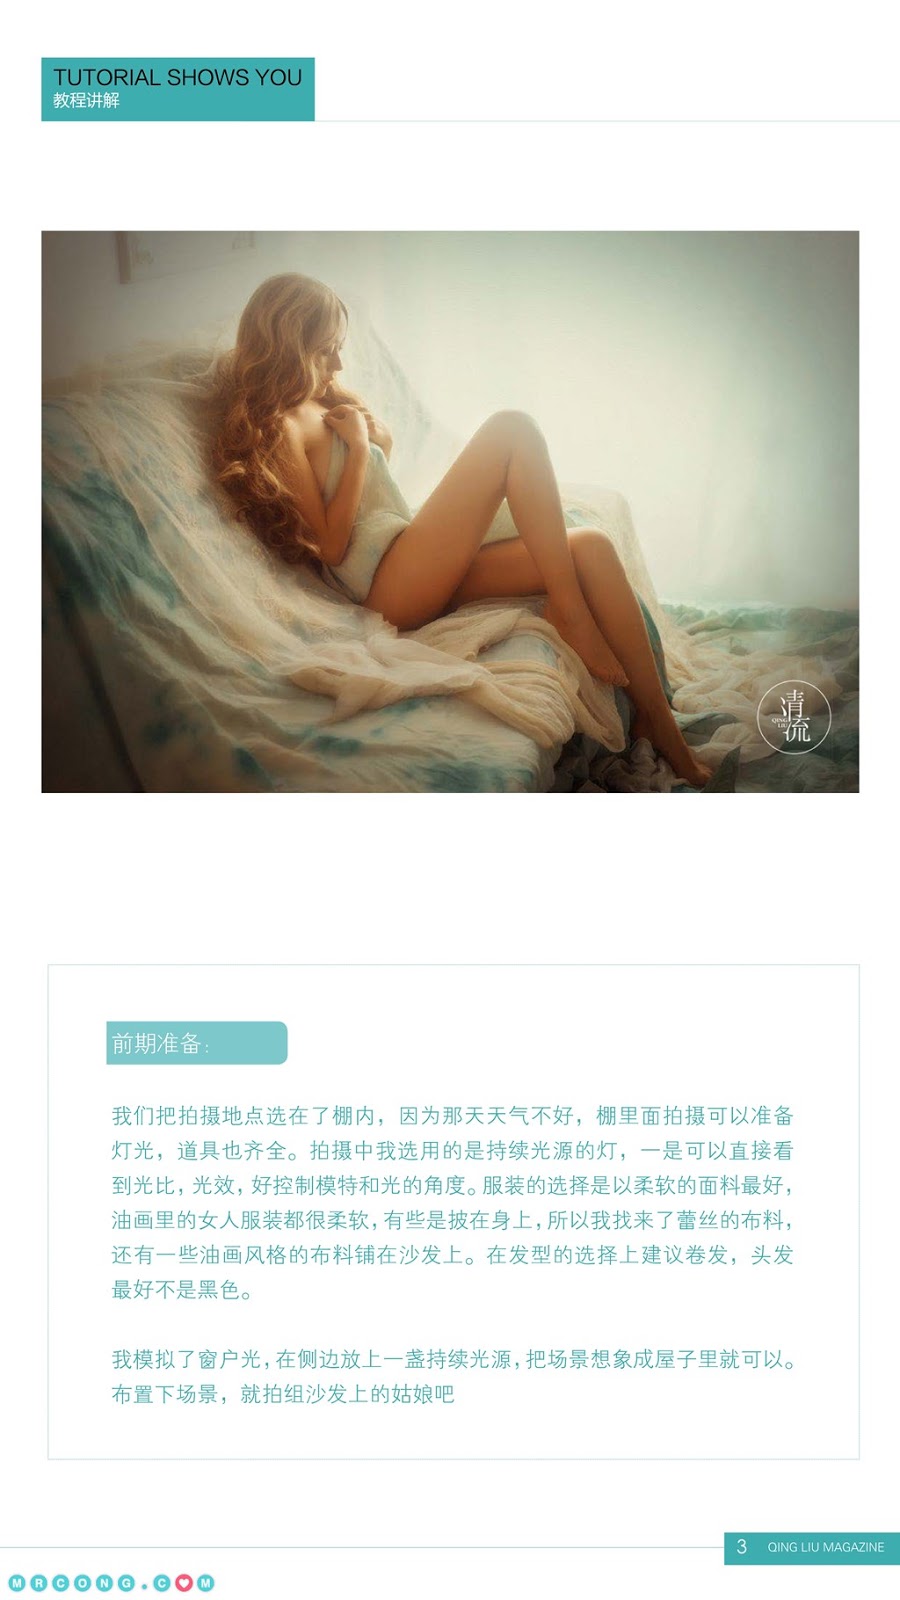 Qing Liu Magazine 2017-09-01 (84 pictures)